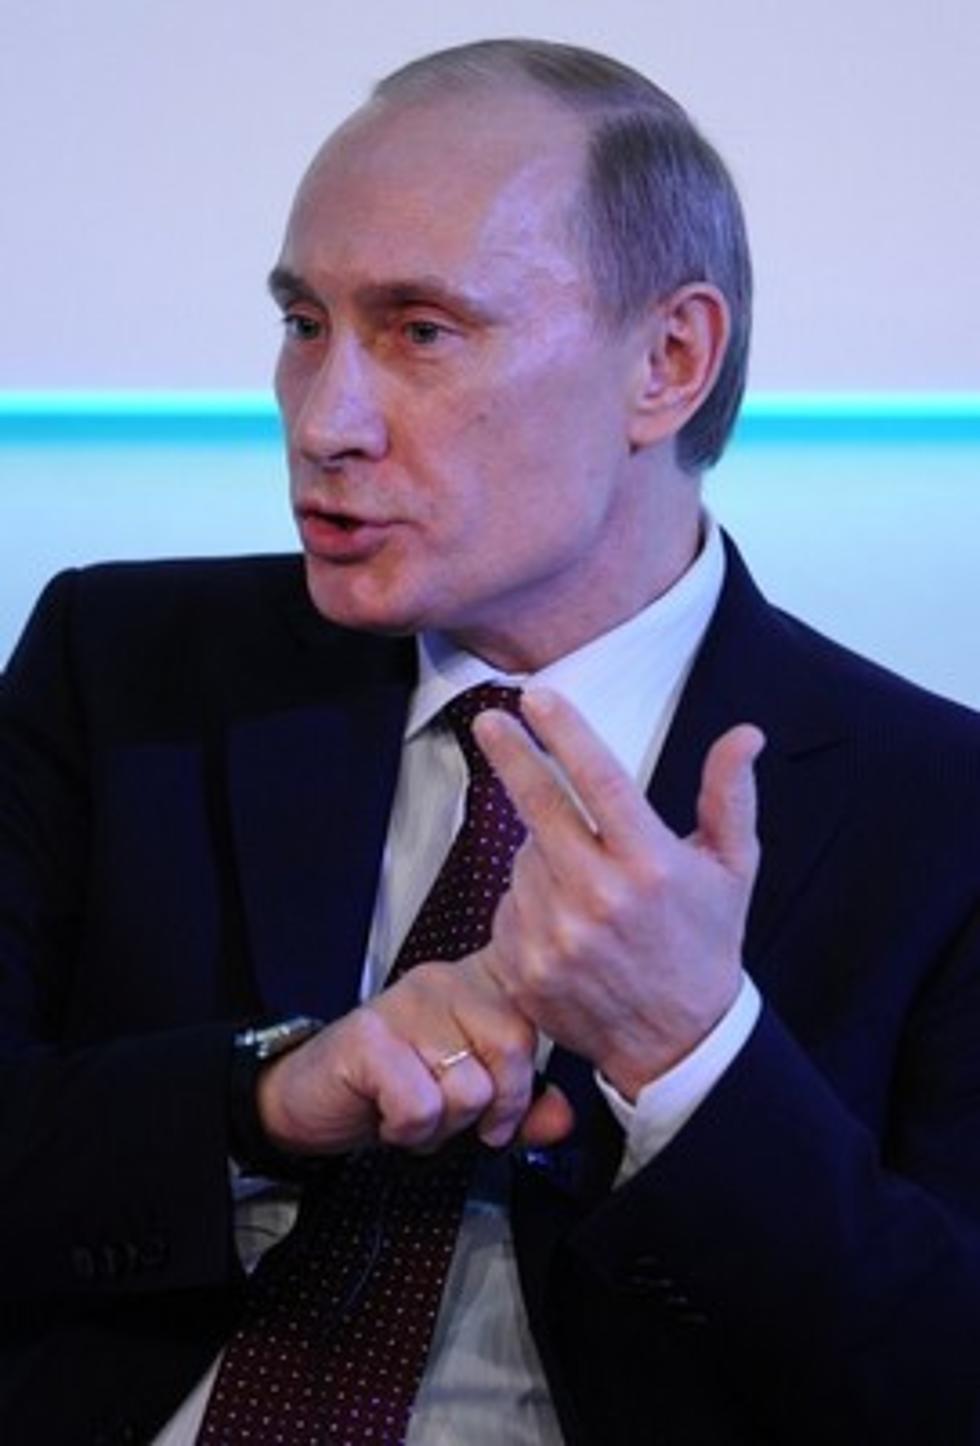 Putin is Puttin&#8217; on the Ritz